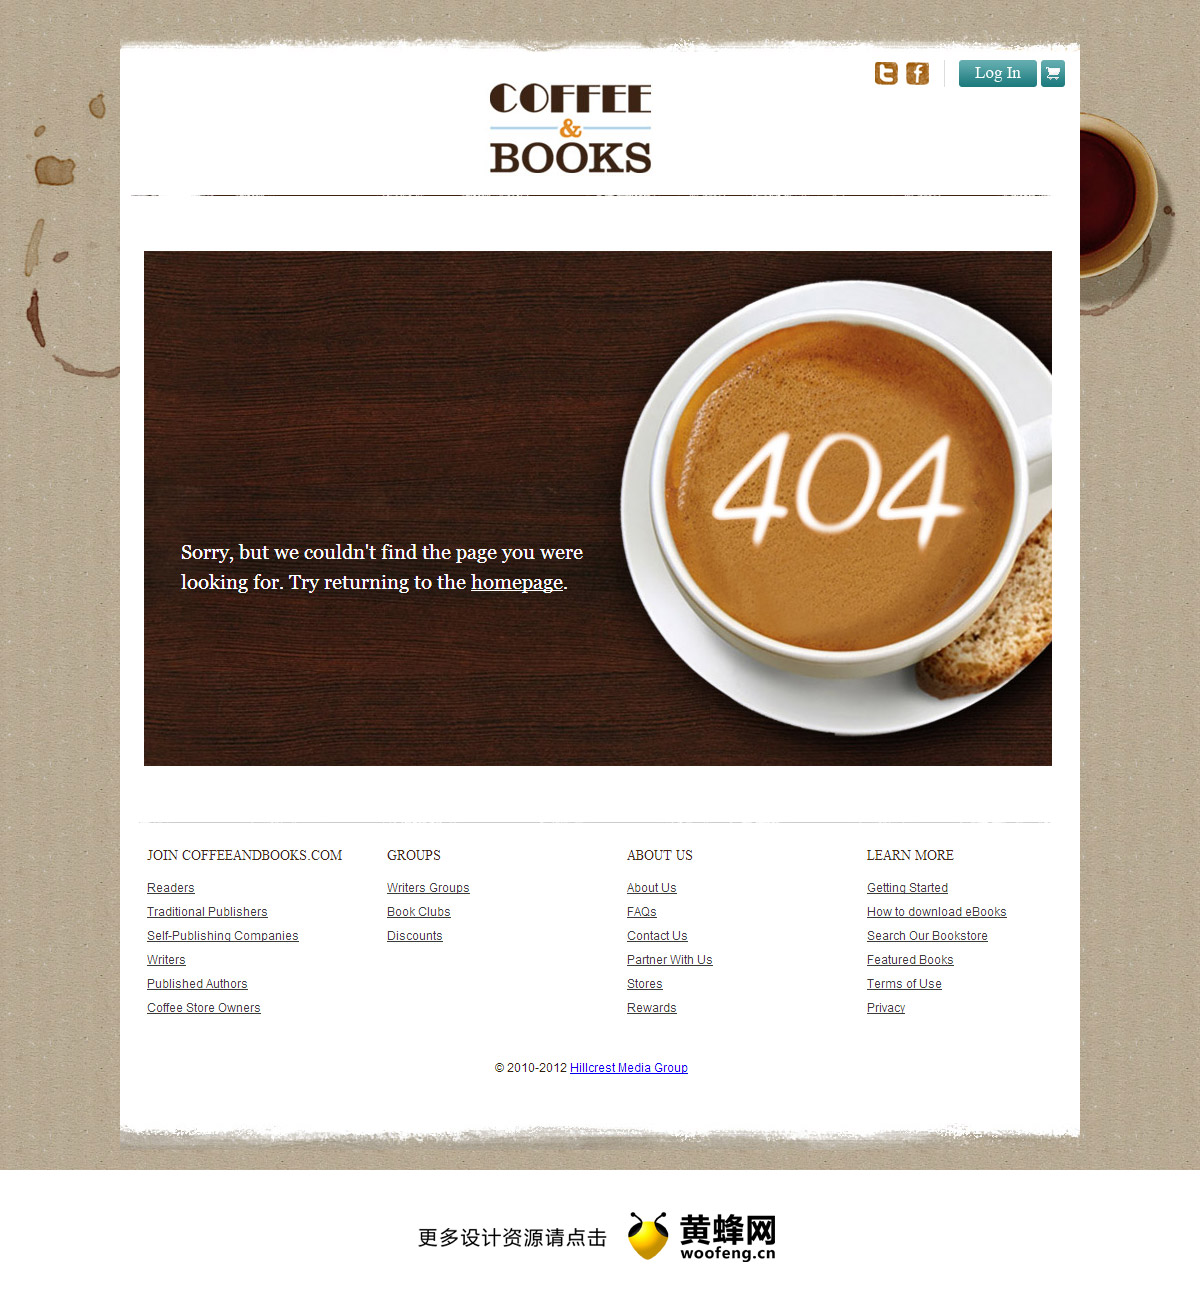 咖啡书籍网站404页面设计欣赏，来源自黄蜂网https://woofeng.cn/webcut/